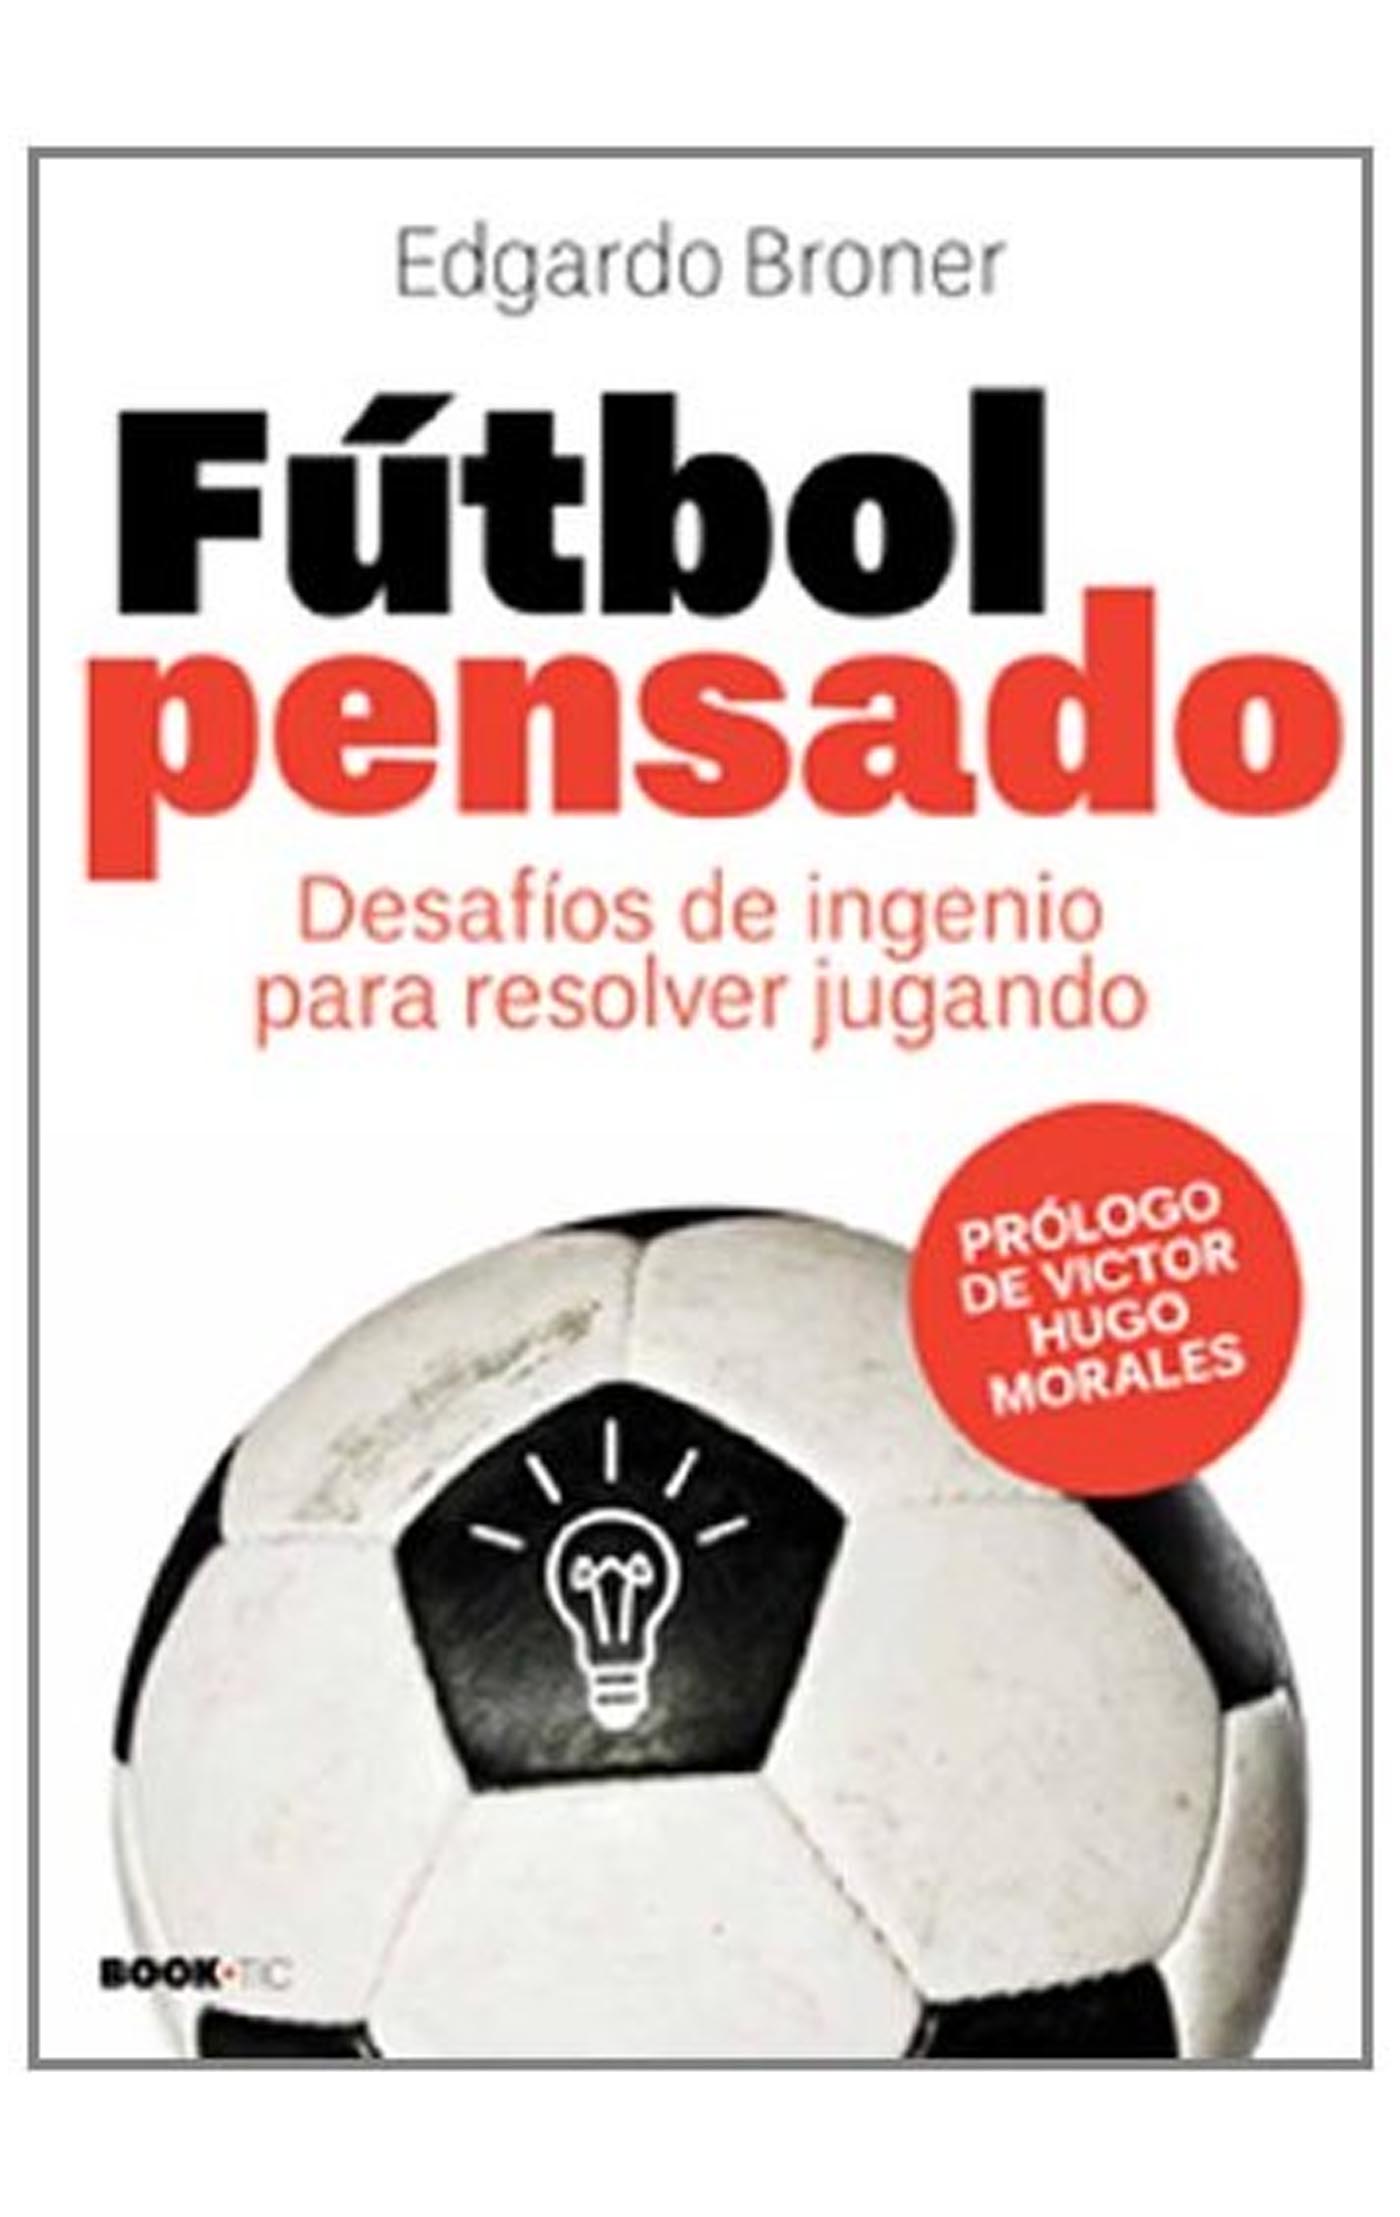 🔰Novedad. ✓Cómo llegar a - Futbología libros de fútbol